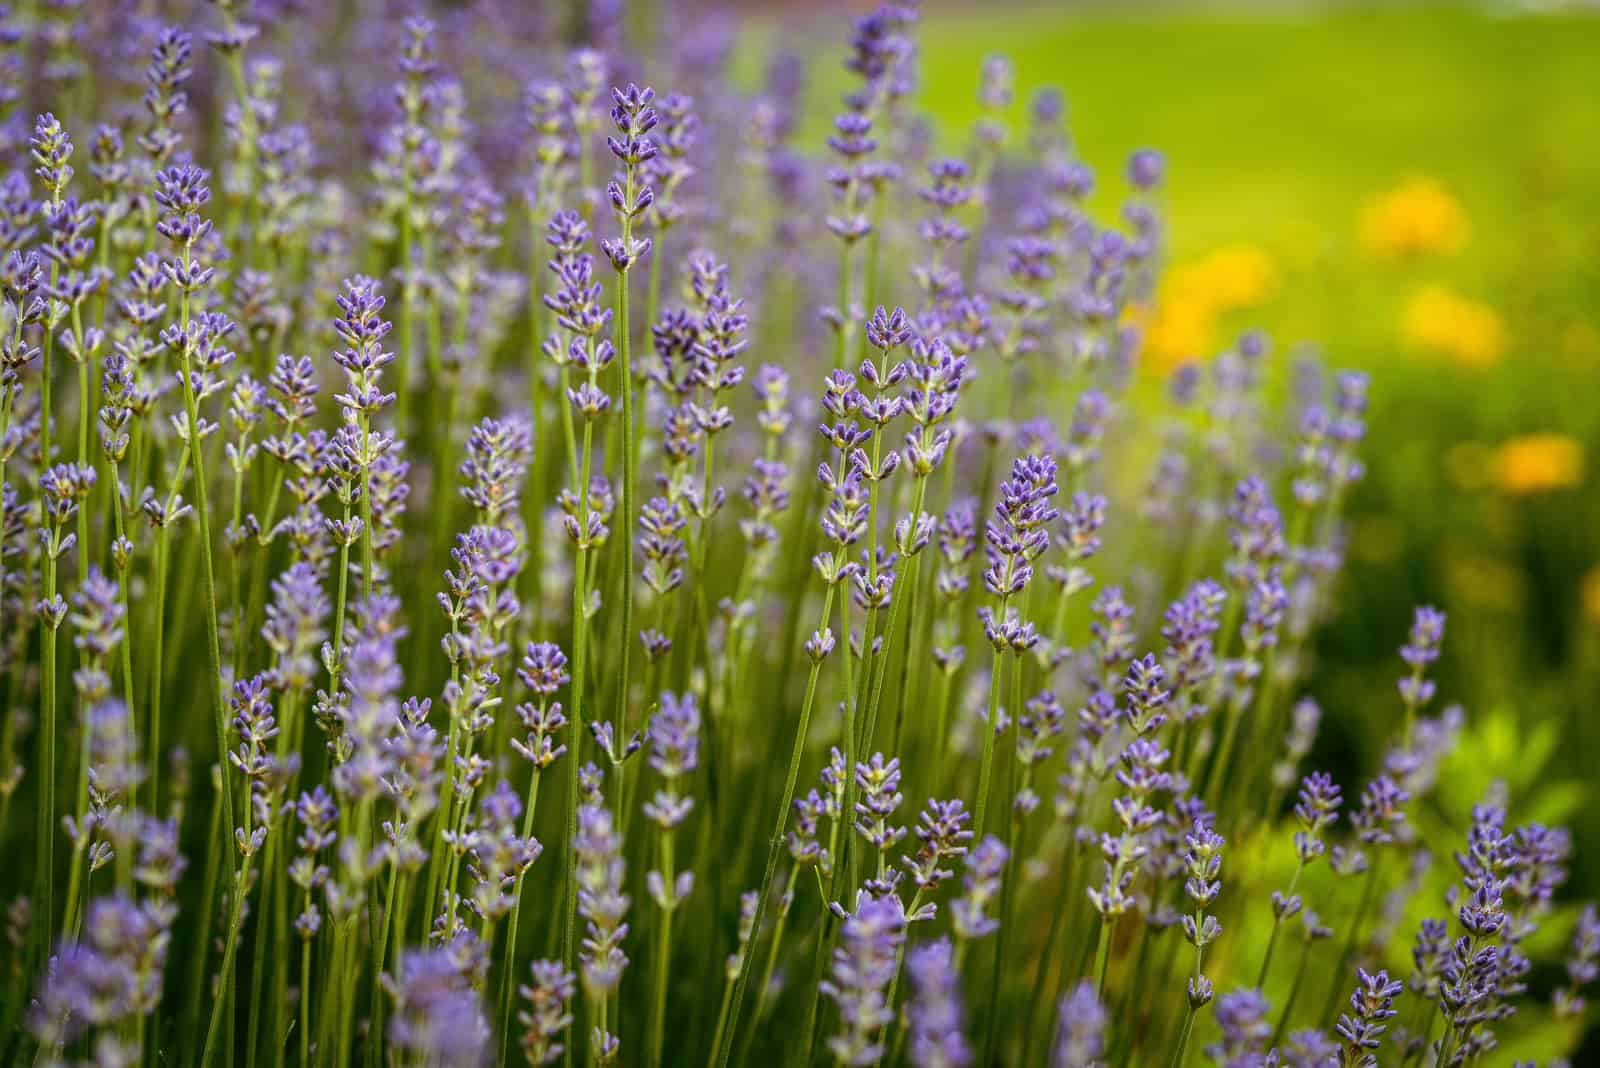 Lavender in the summer garden